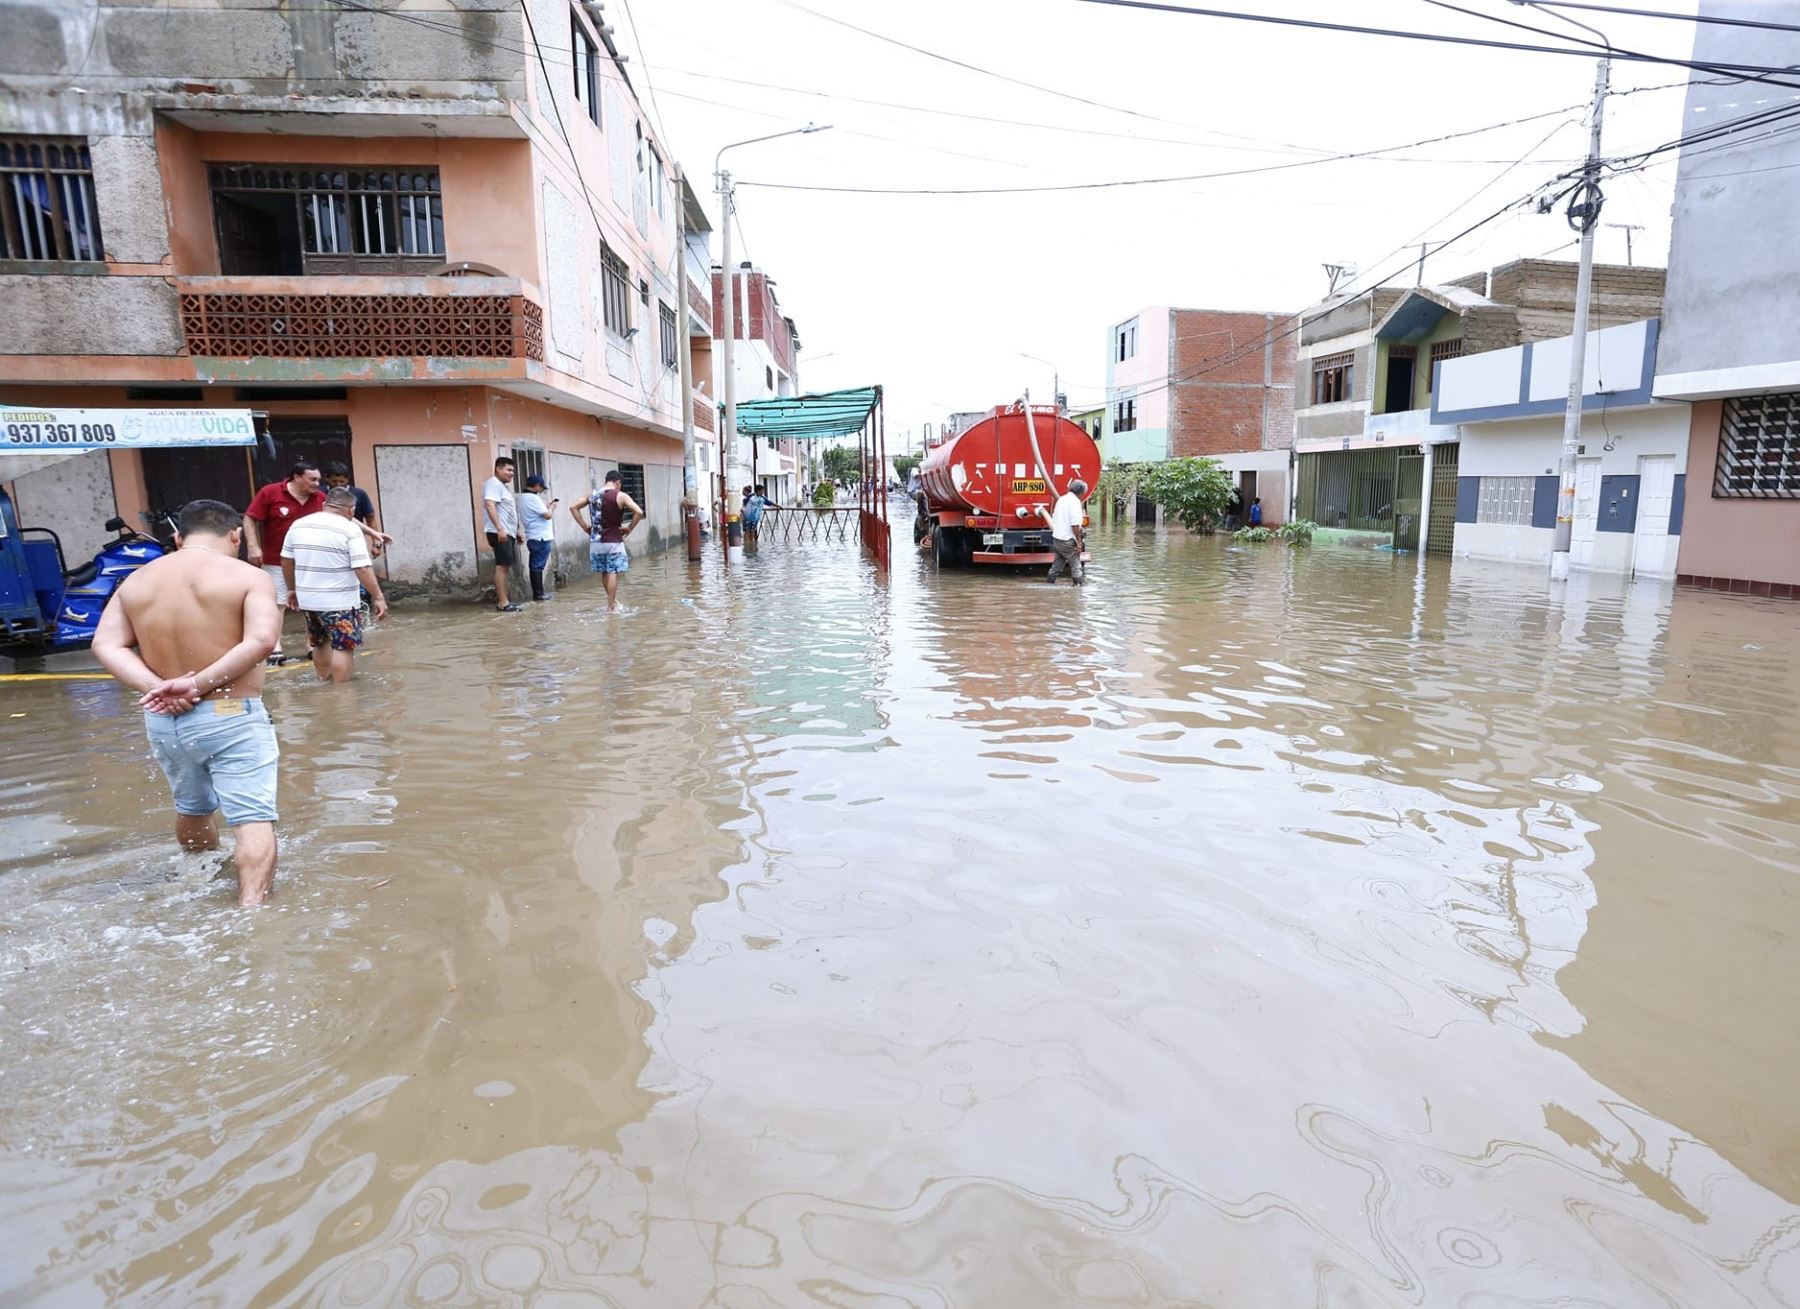 Un total de 300 viviendas de la ciudad de Chimbote quedaron destruidas por la lluvia torrencial que se registró el martes 14, otras 700 casas resultaron afectadas.